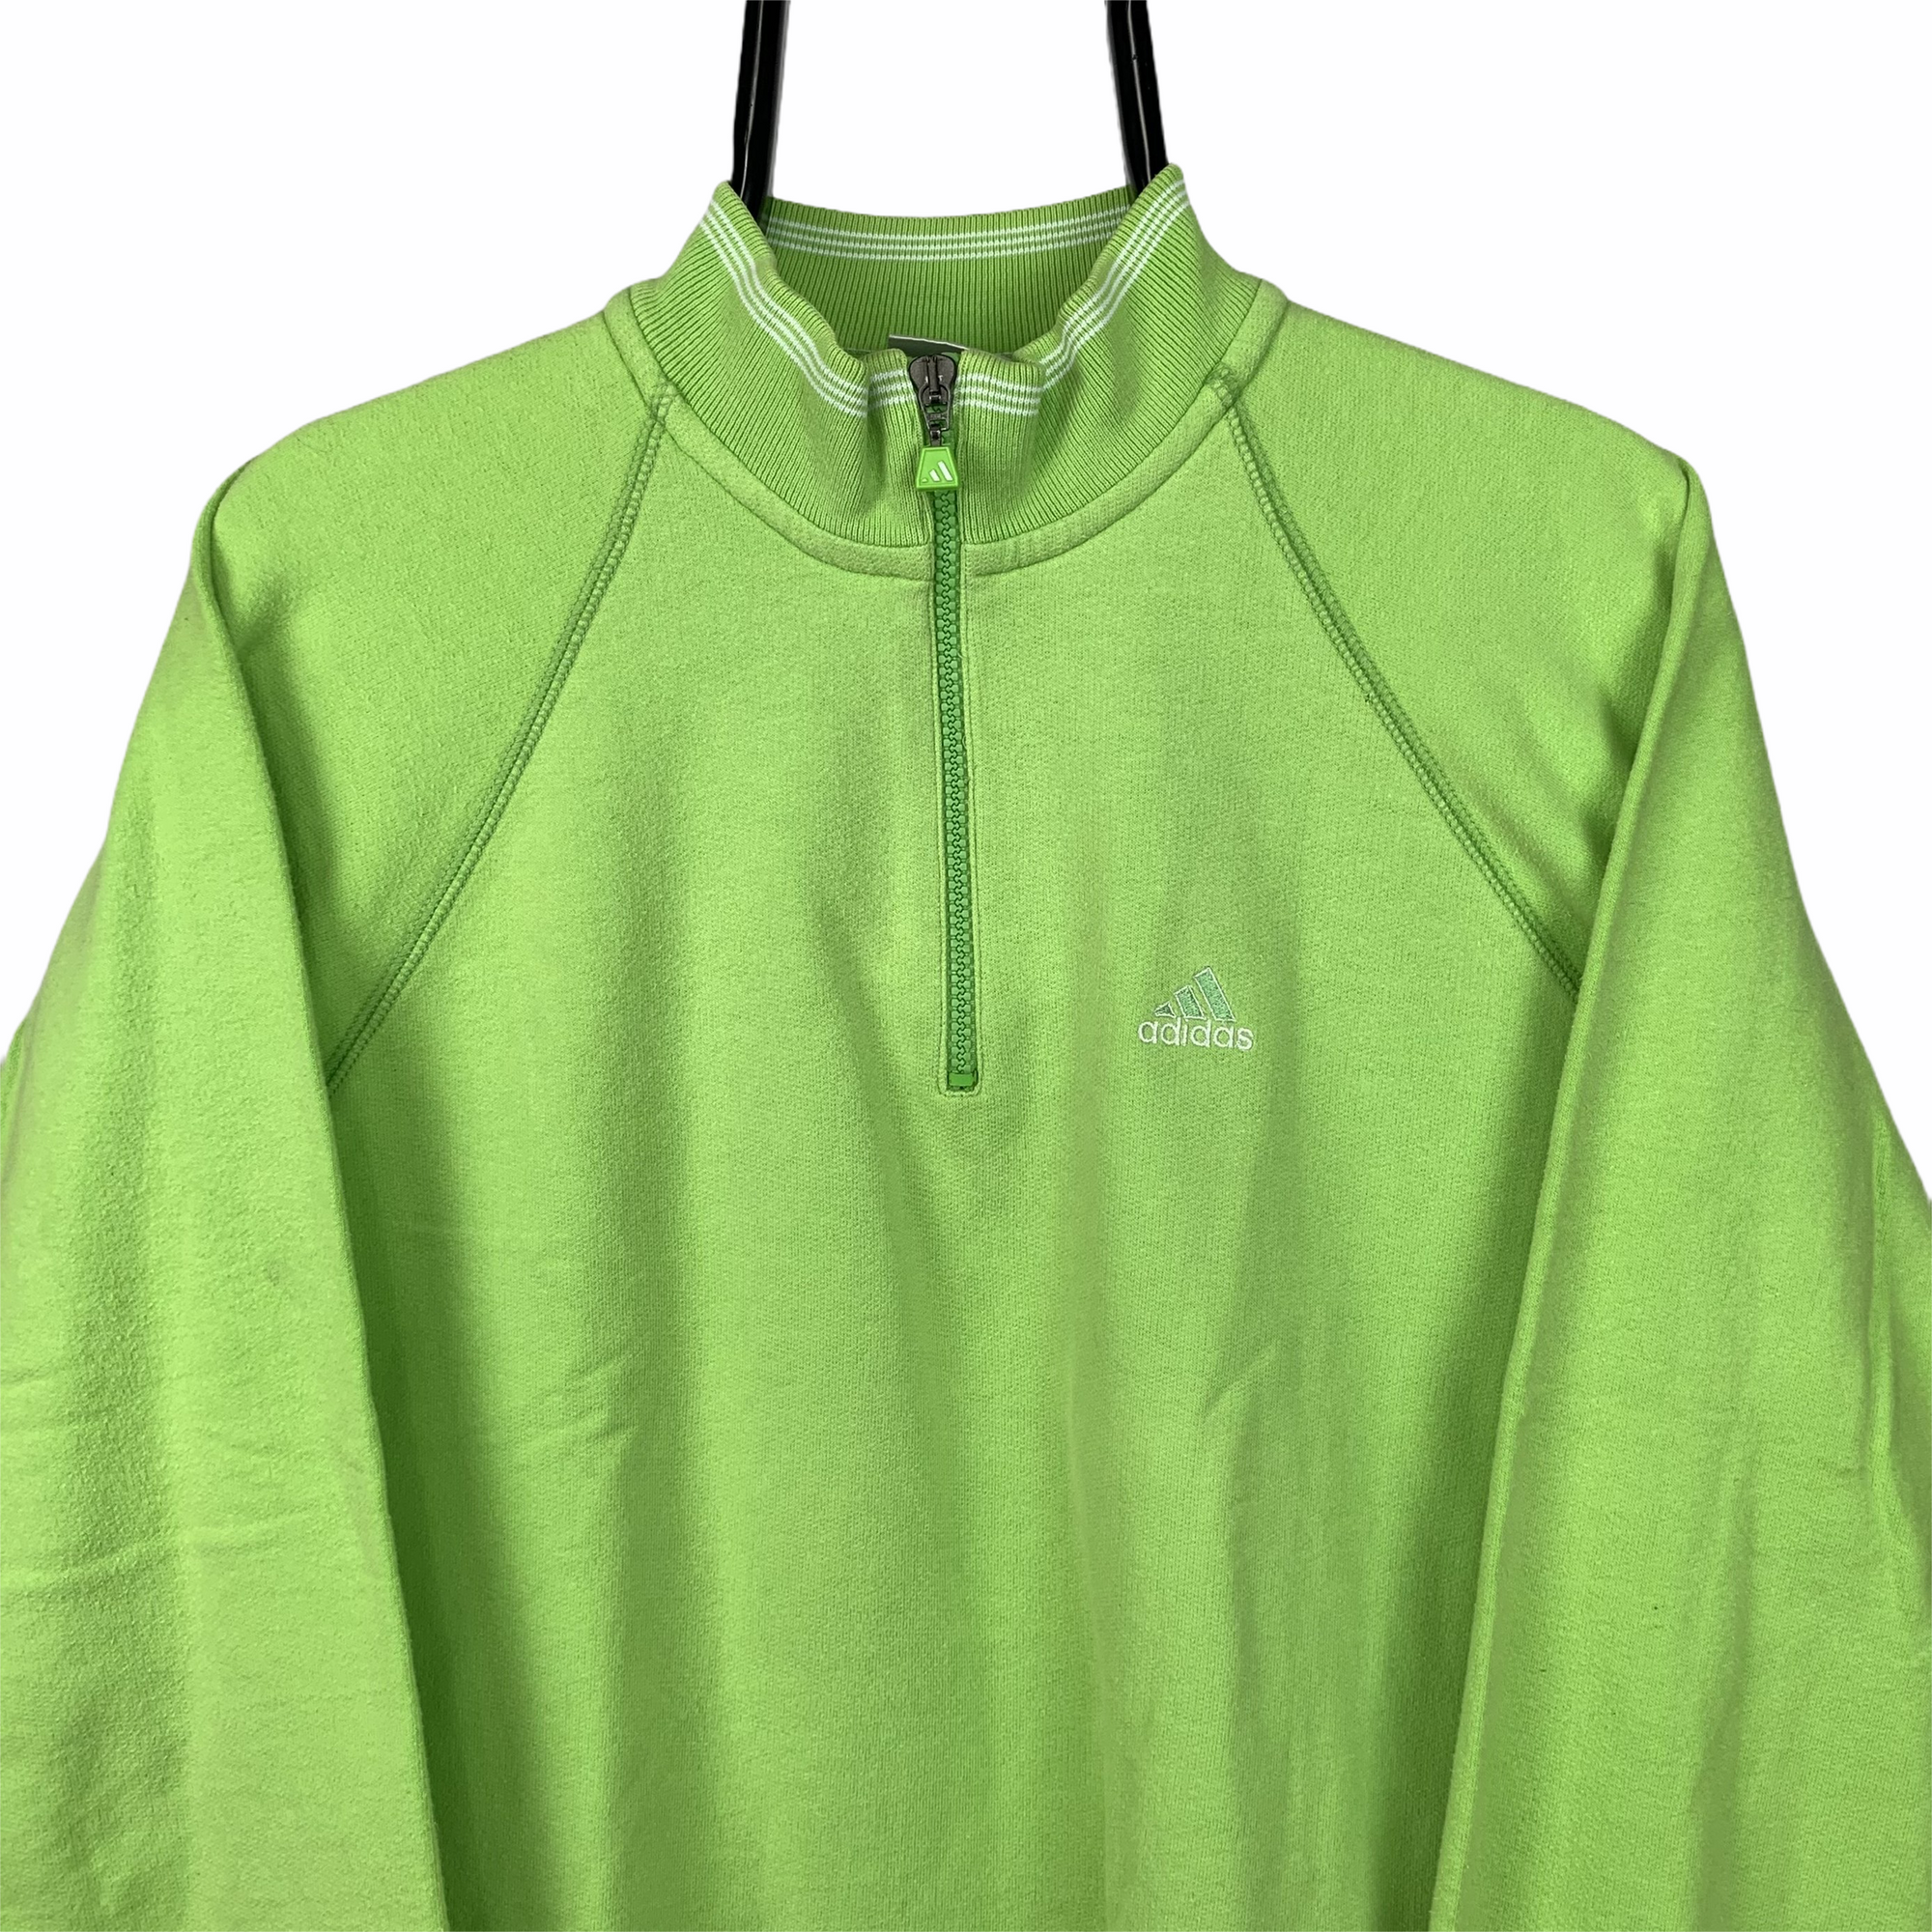 Vintage Adidas 1/4 Zip Sweatshirt in Lime Green - Men's Small/Women's Medium